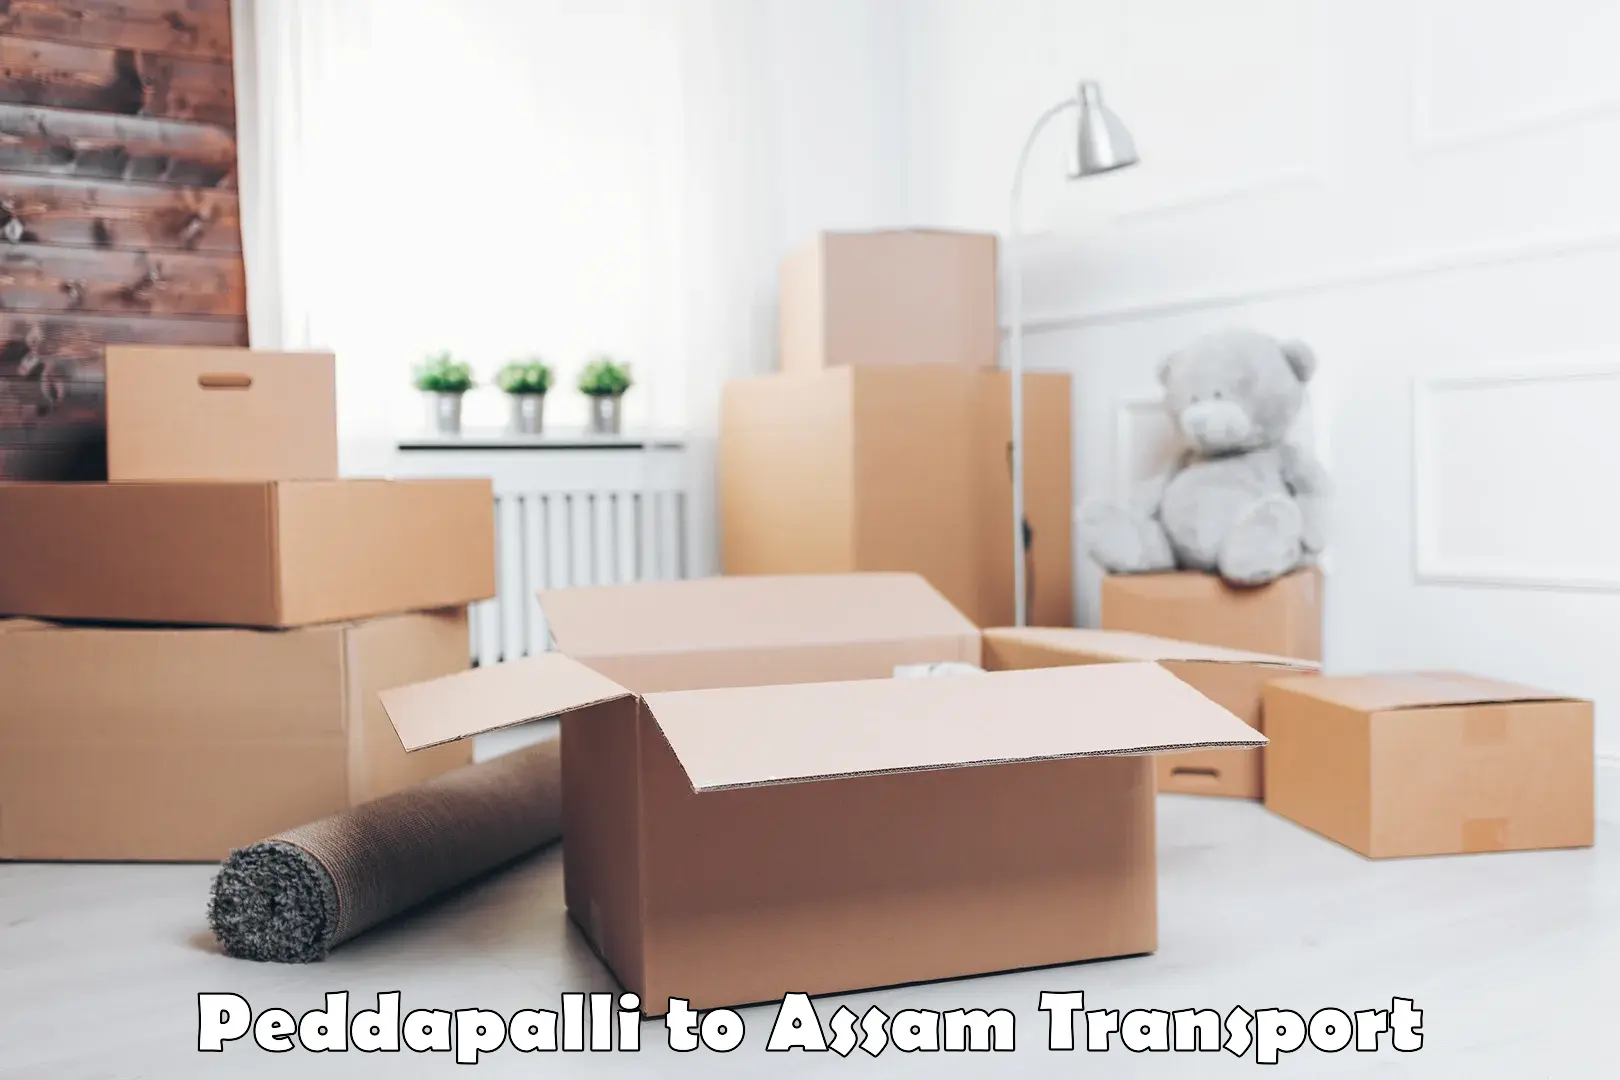 Furniture transport service Peddapalli to Assam